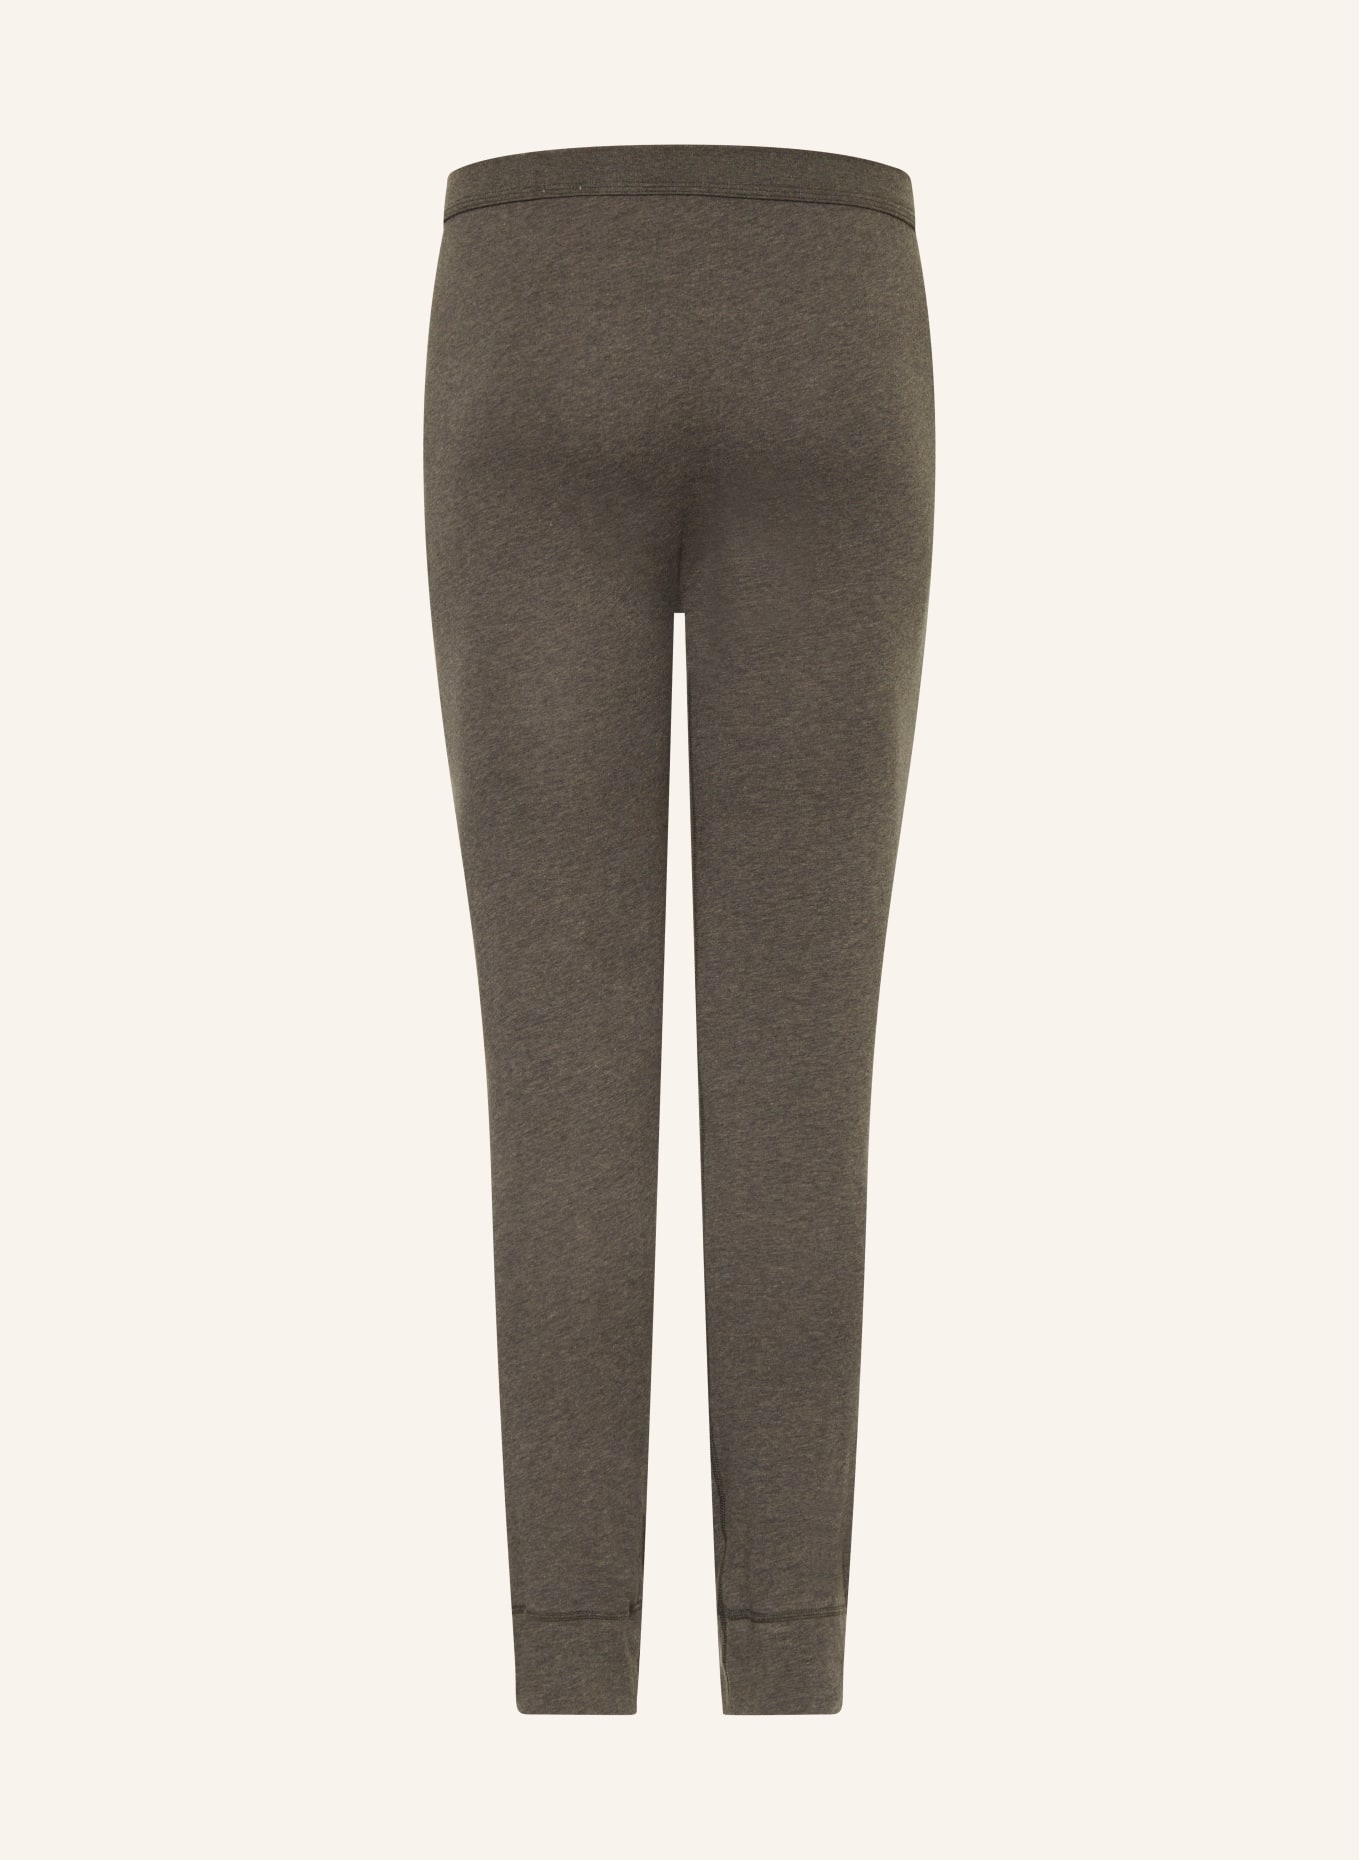 SCHIESSER Lange Unterhose ESSENTIALS, Farbe: KHAKI (Bild 2)